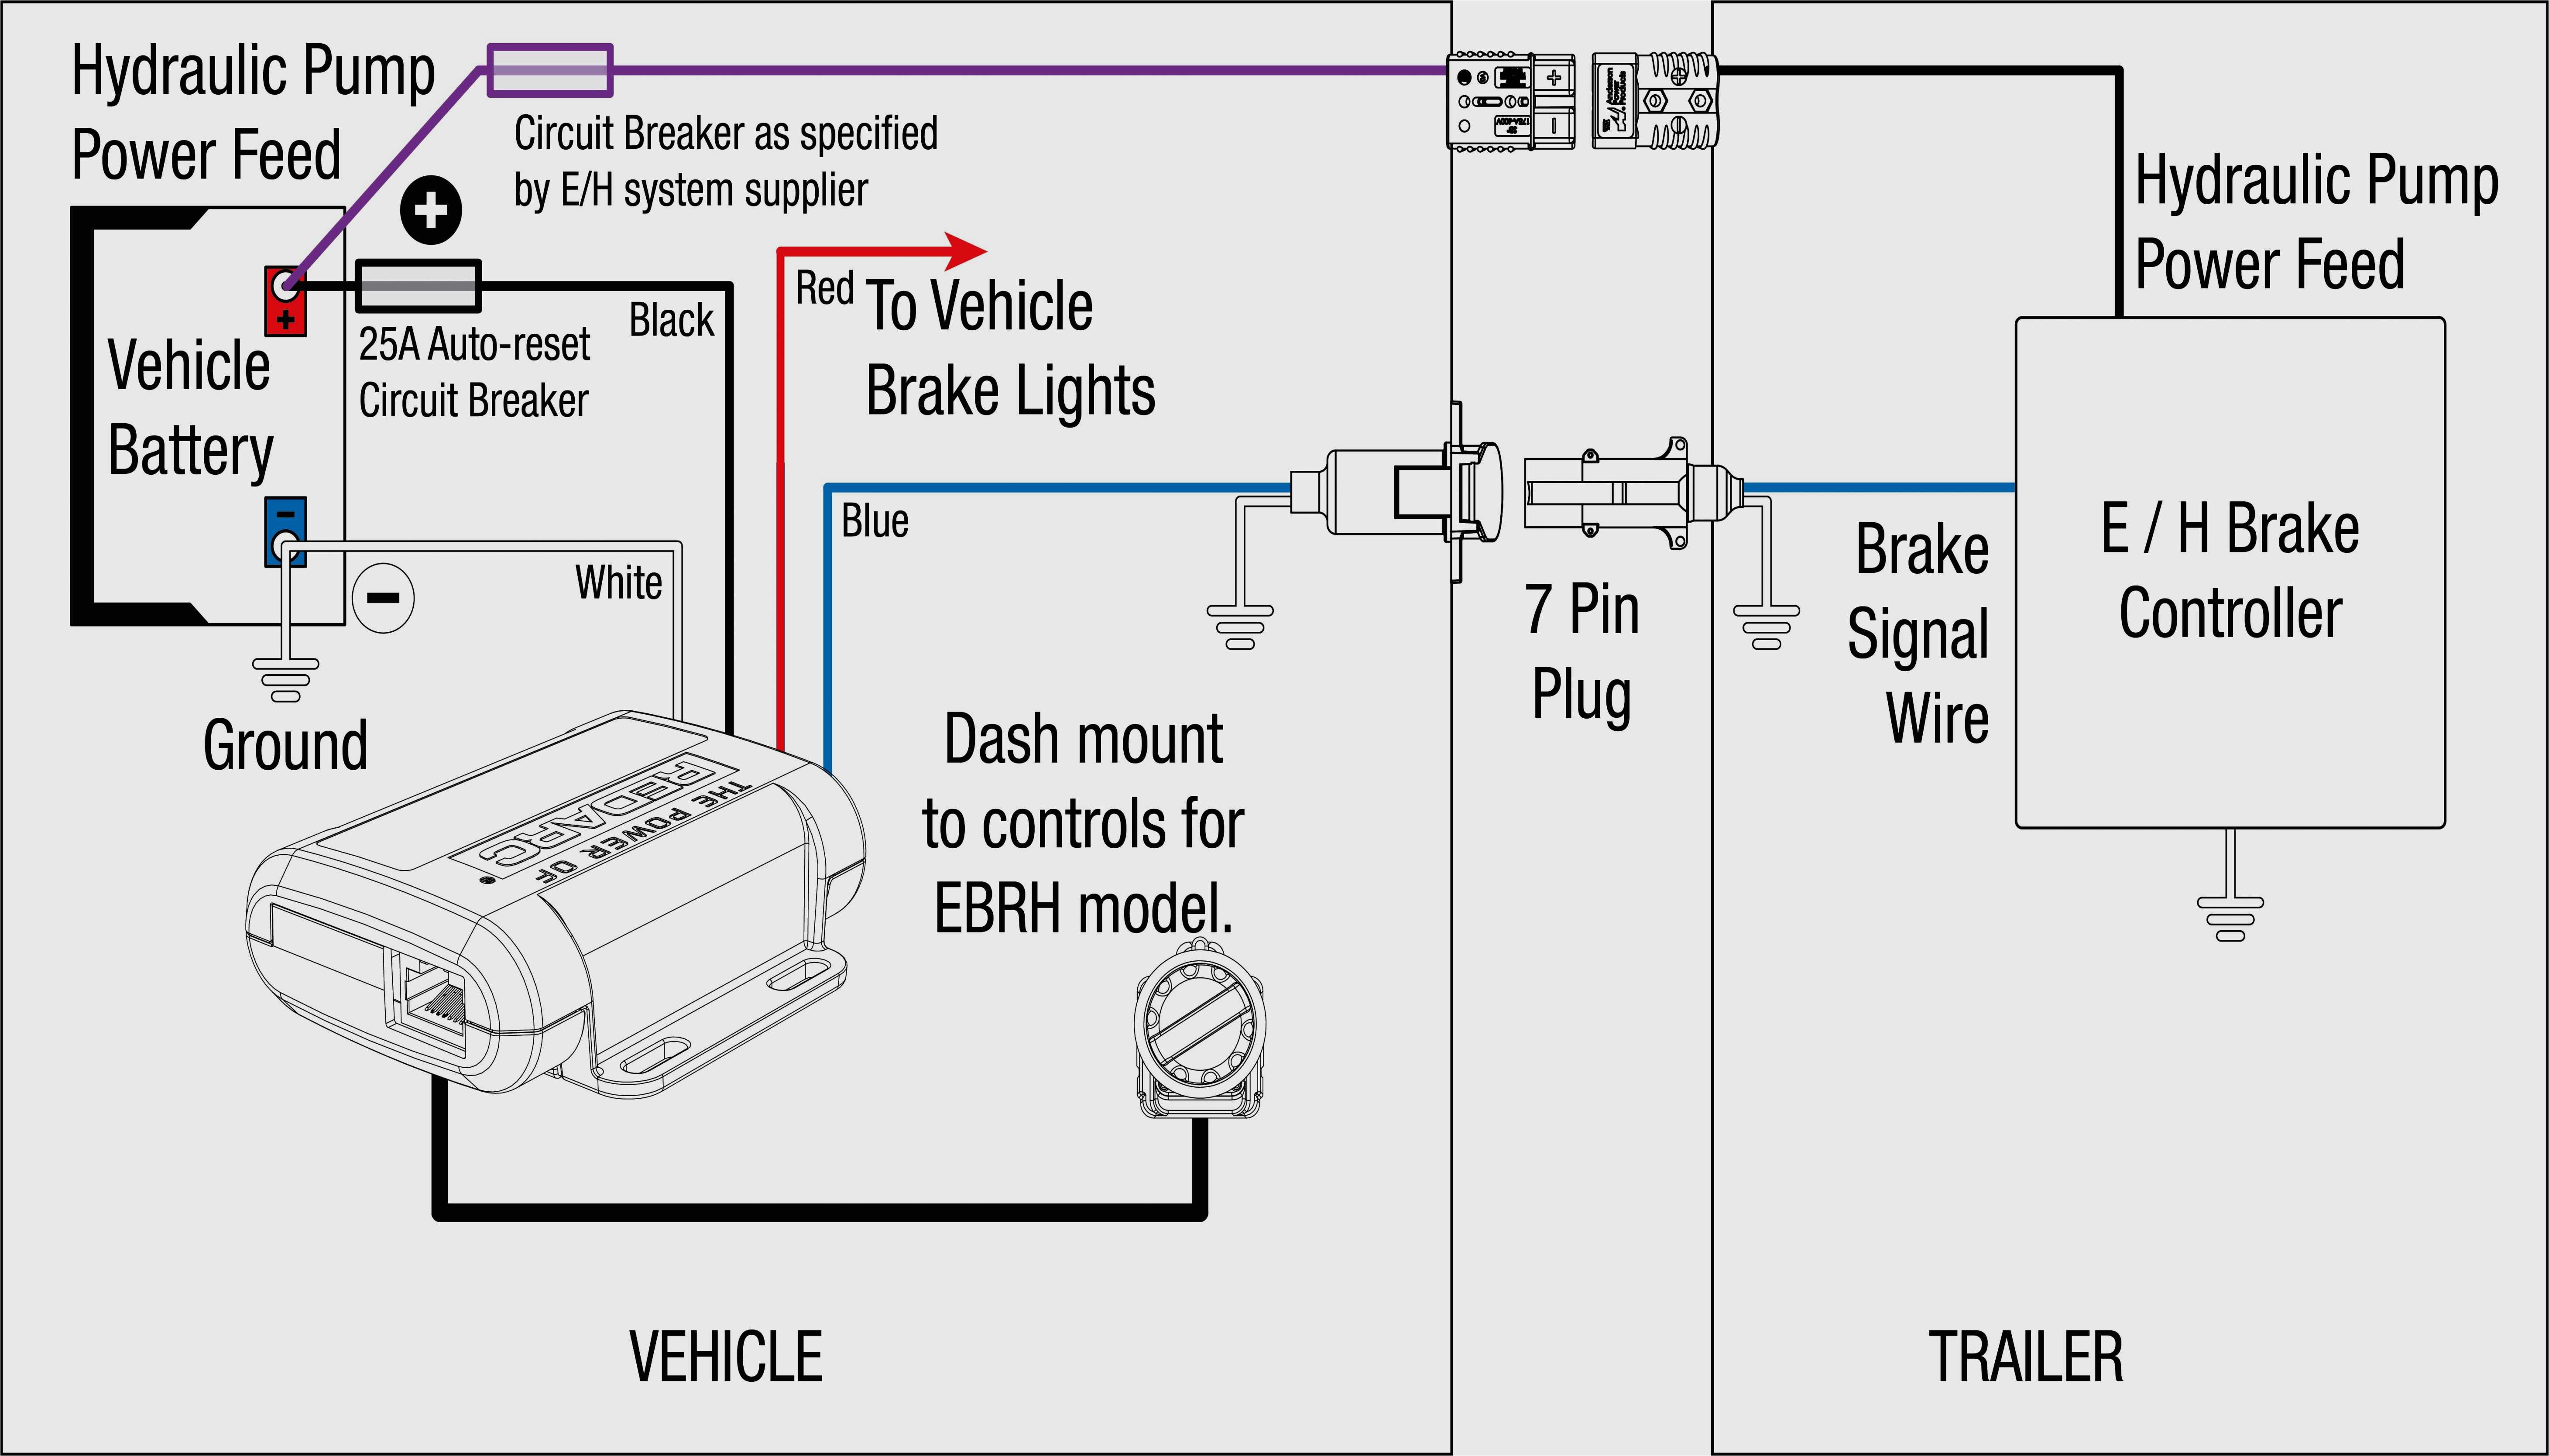 ke controller wiring diagram wiring diagram blog prodigy ke controller wiring harness ford free download wiring